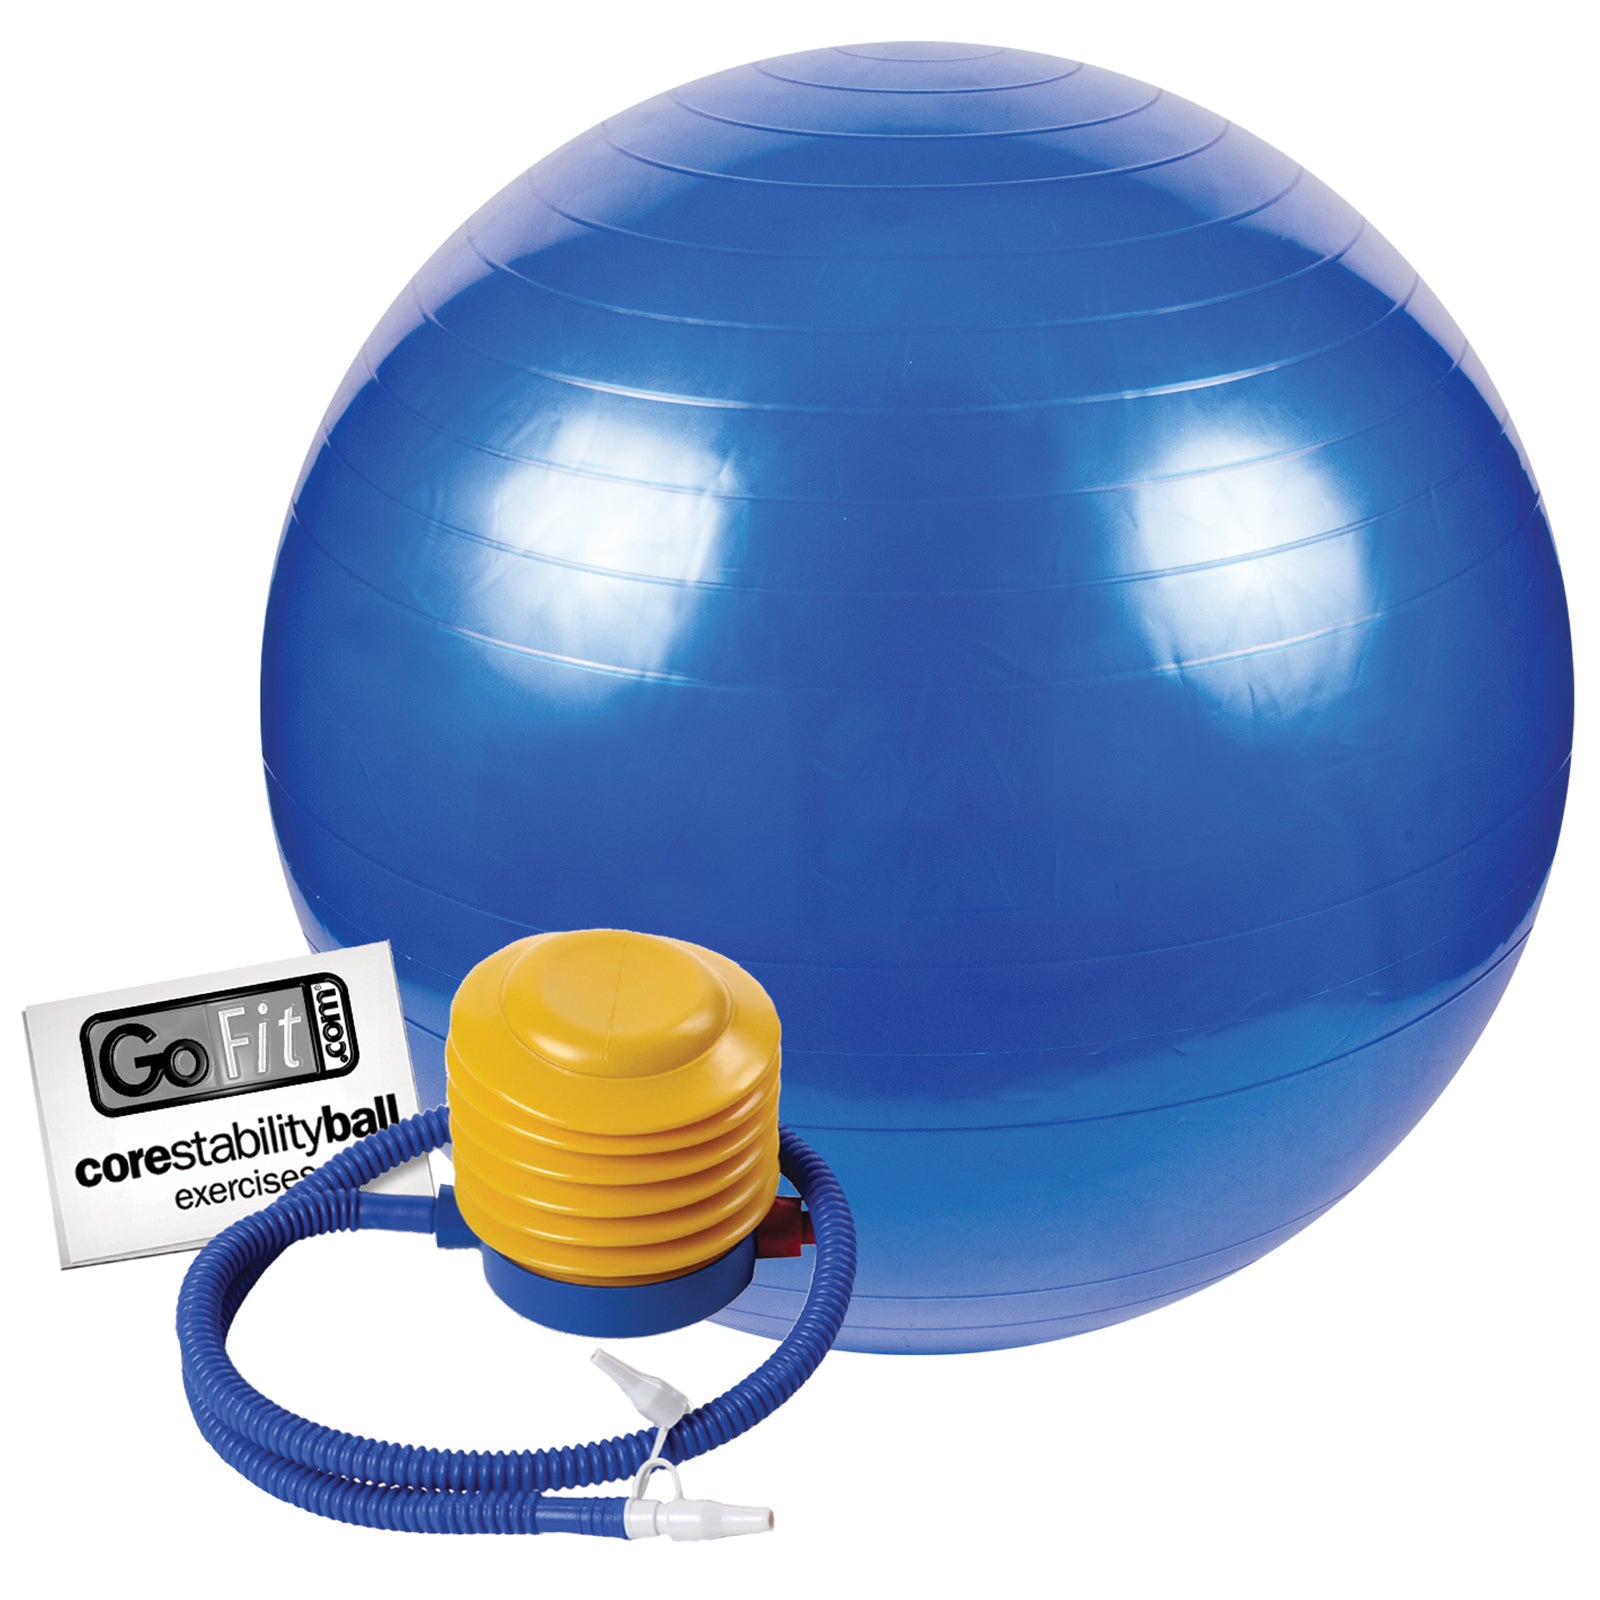 gofit exercise ball